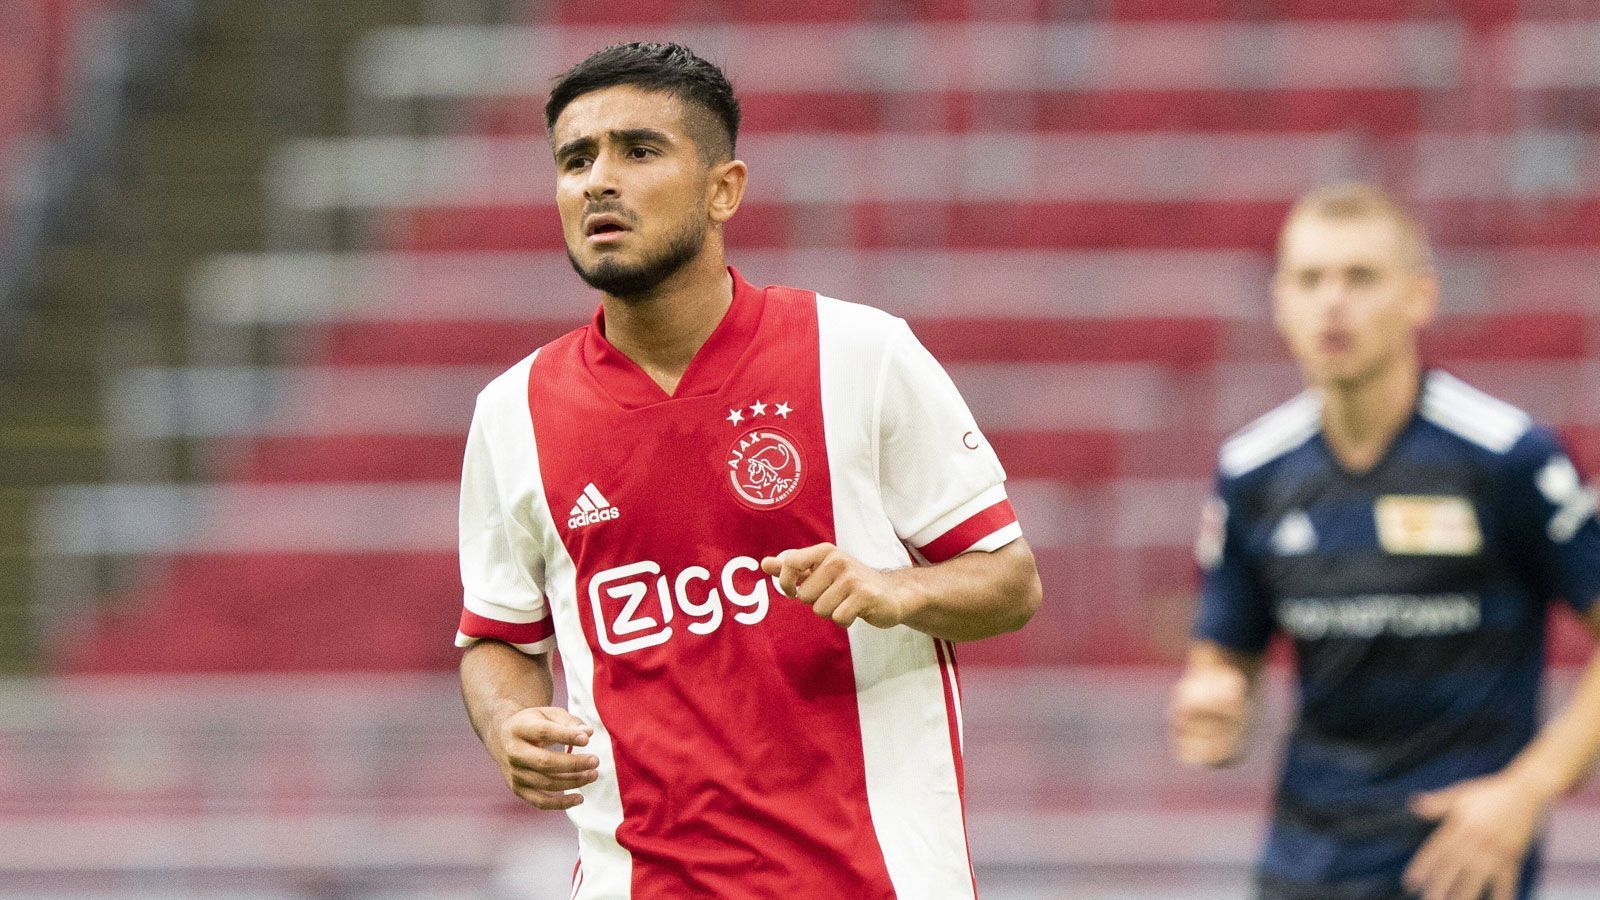 
                <strong>Platz 6: Naci Ünüvar (17 Jahre)</strong><br>
                Aktueller Verein: Ajax Amsterdam - Nation: Niederlande/Türkei - Position: Linksaußen - Marktwert: 6 Millionen Euro
              